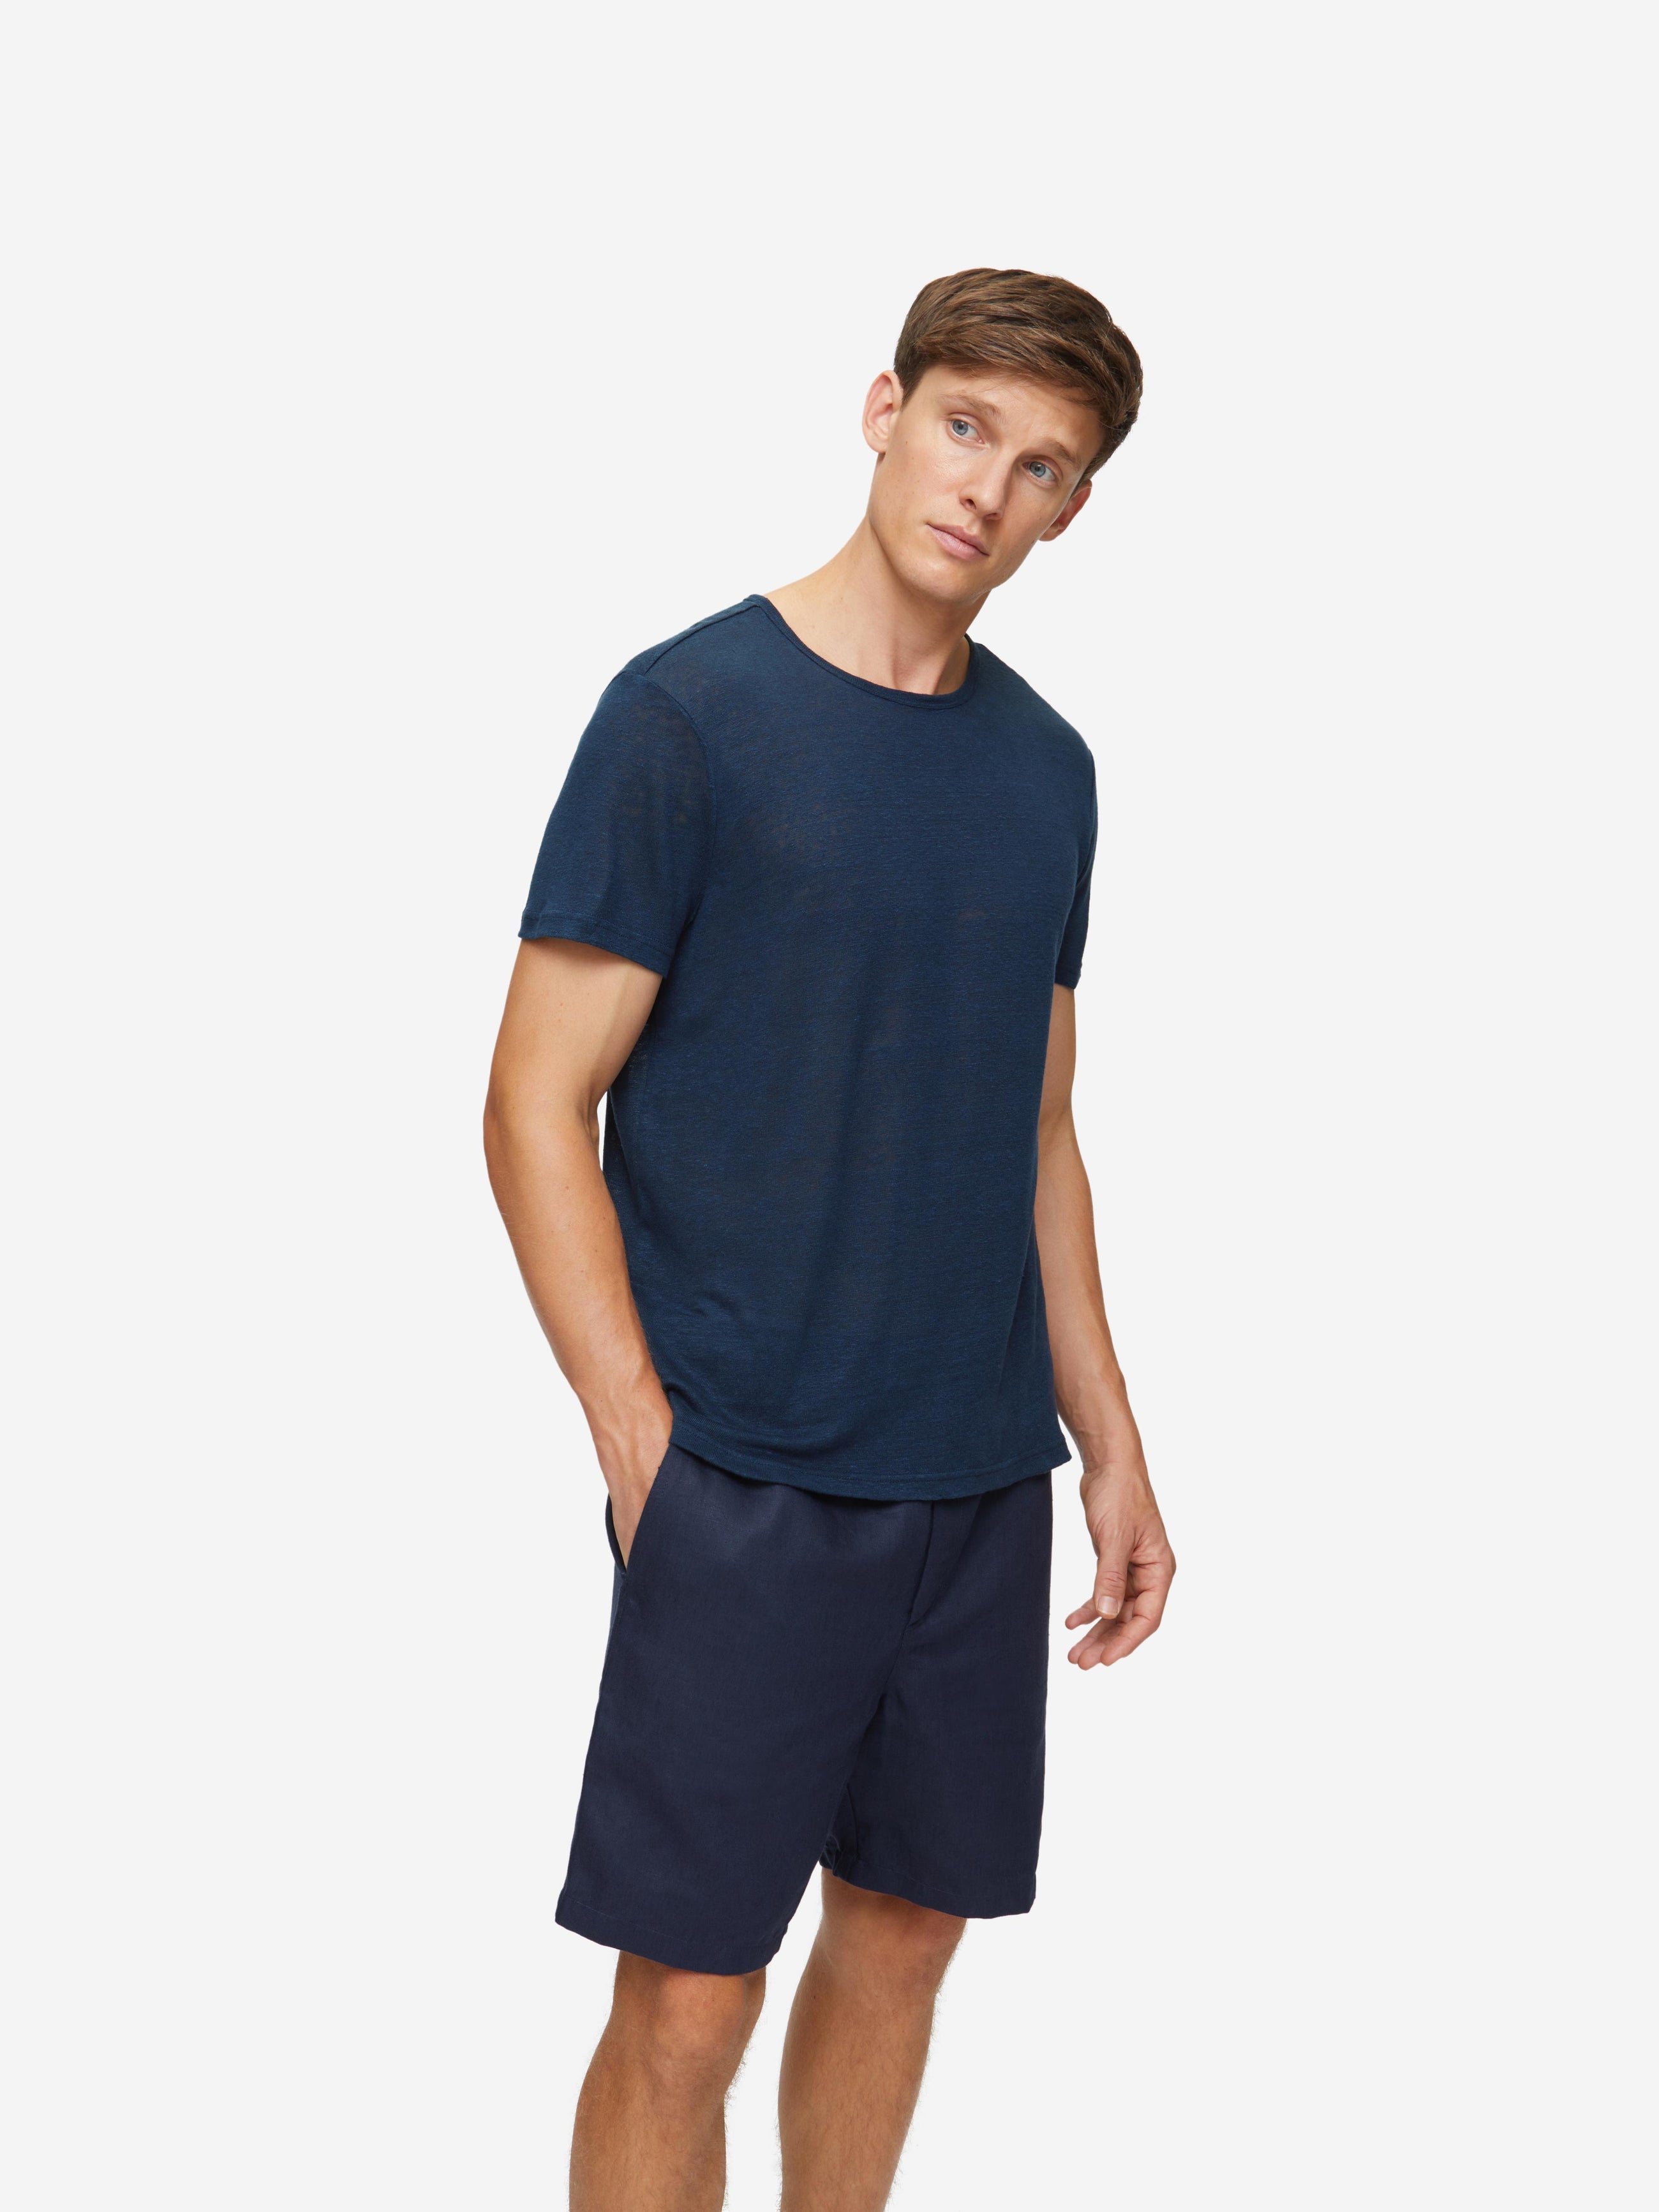 Men's T-Shirt Jordan 2 Linen Navy